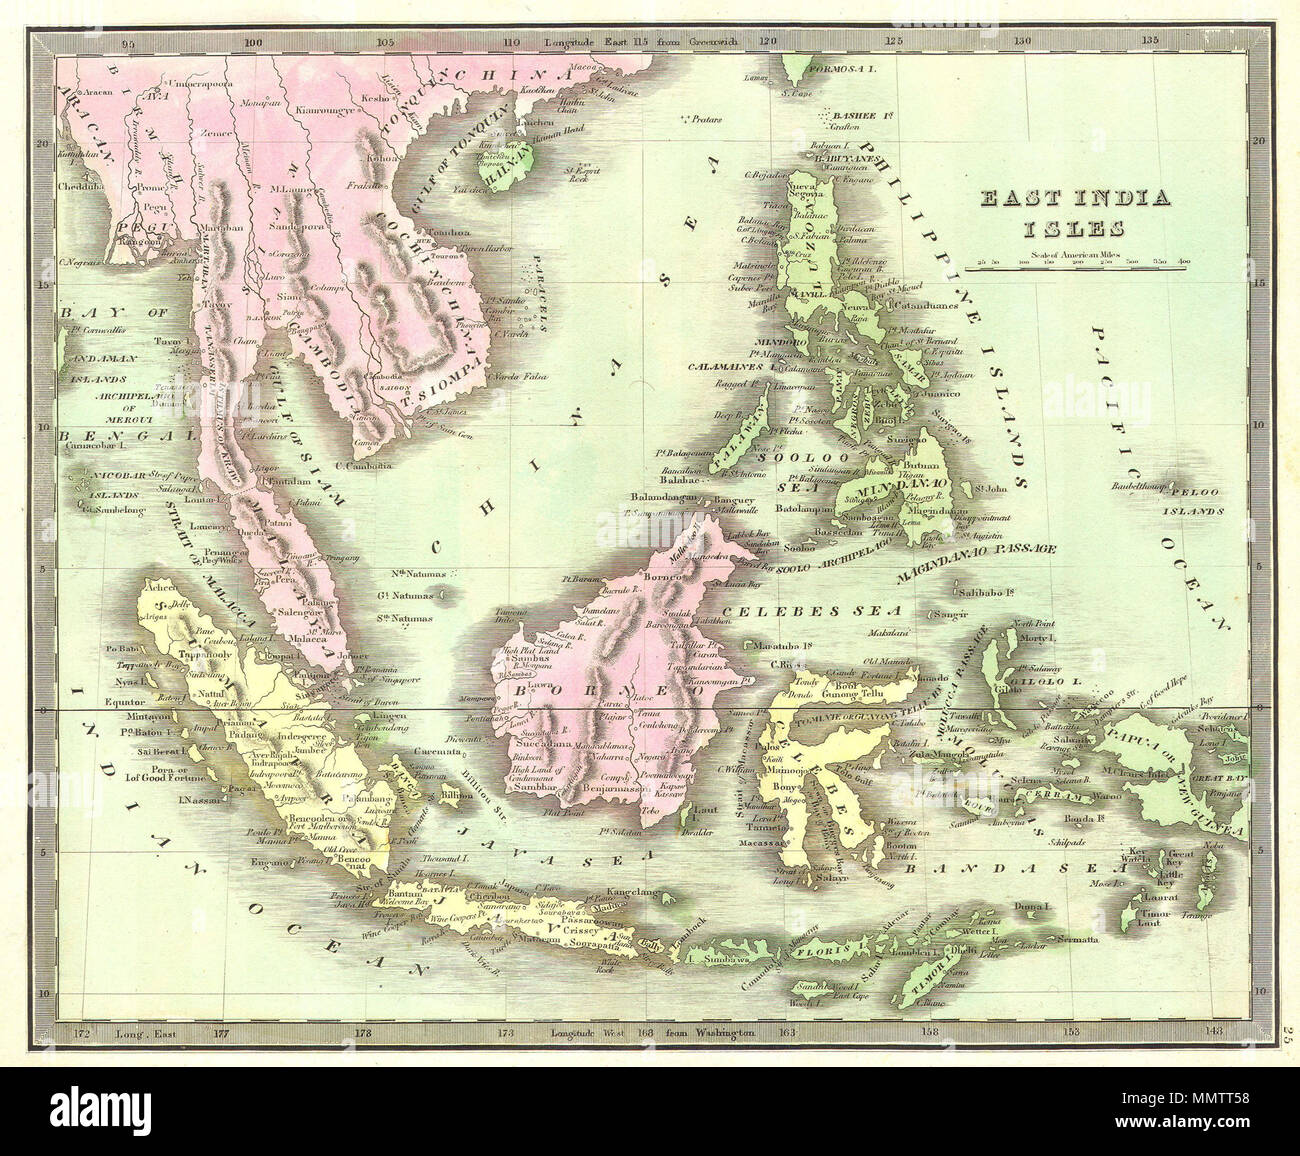 . Englisch: Diese Hand farbigen Karte ist ein lithografischen Gravur von Ostindien, dating bis 1842. Zeigt alle von Südostasien und Ostindien einschließlich Sumatra, Java, Borneo und den Philippinen. Auf dem Festland zeigt es die Königreiche von Siam (Thailand), Tonquin (Vietnam), Malaya, und Kambodscha. Stellt auch die Insel Stadt Singapur. Wie die meisten Greenleaf Karten, das ist Undatiert. Osten Indien Inseln. 1842. 1842 Greenleaf Karte von Ostindien, Borneo, Java, Sumatra, Thailand, Vietnam - Geographicus - EastIndies-greenleaf-1842 Stockfoto